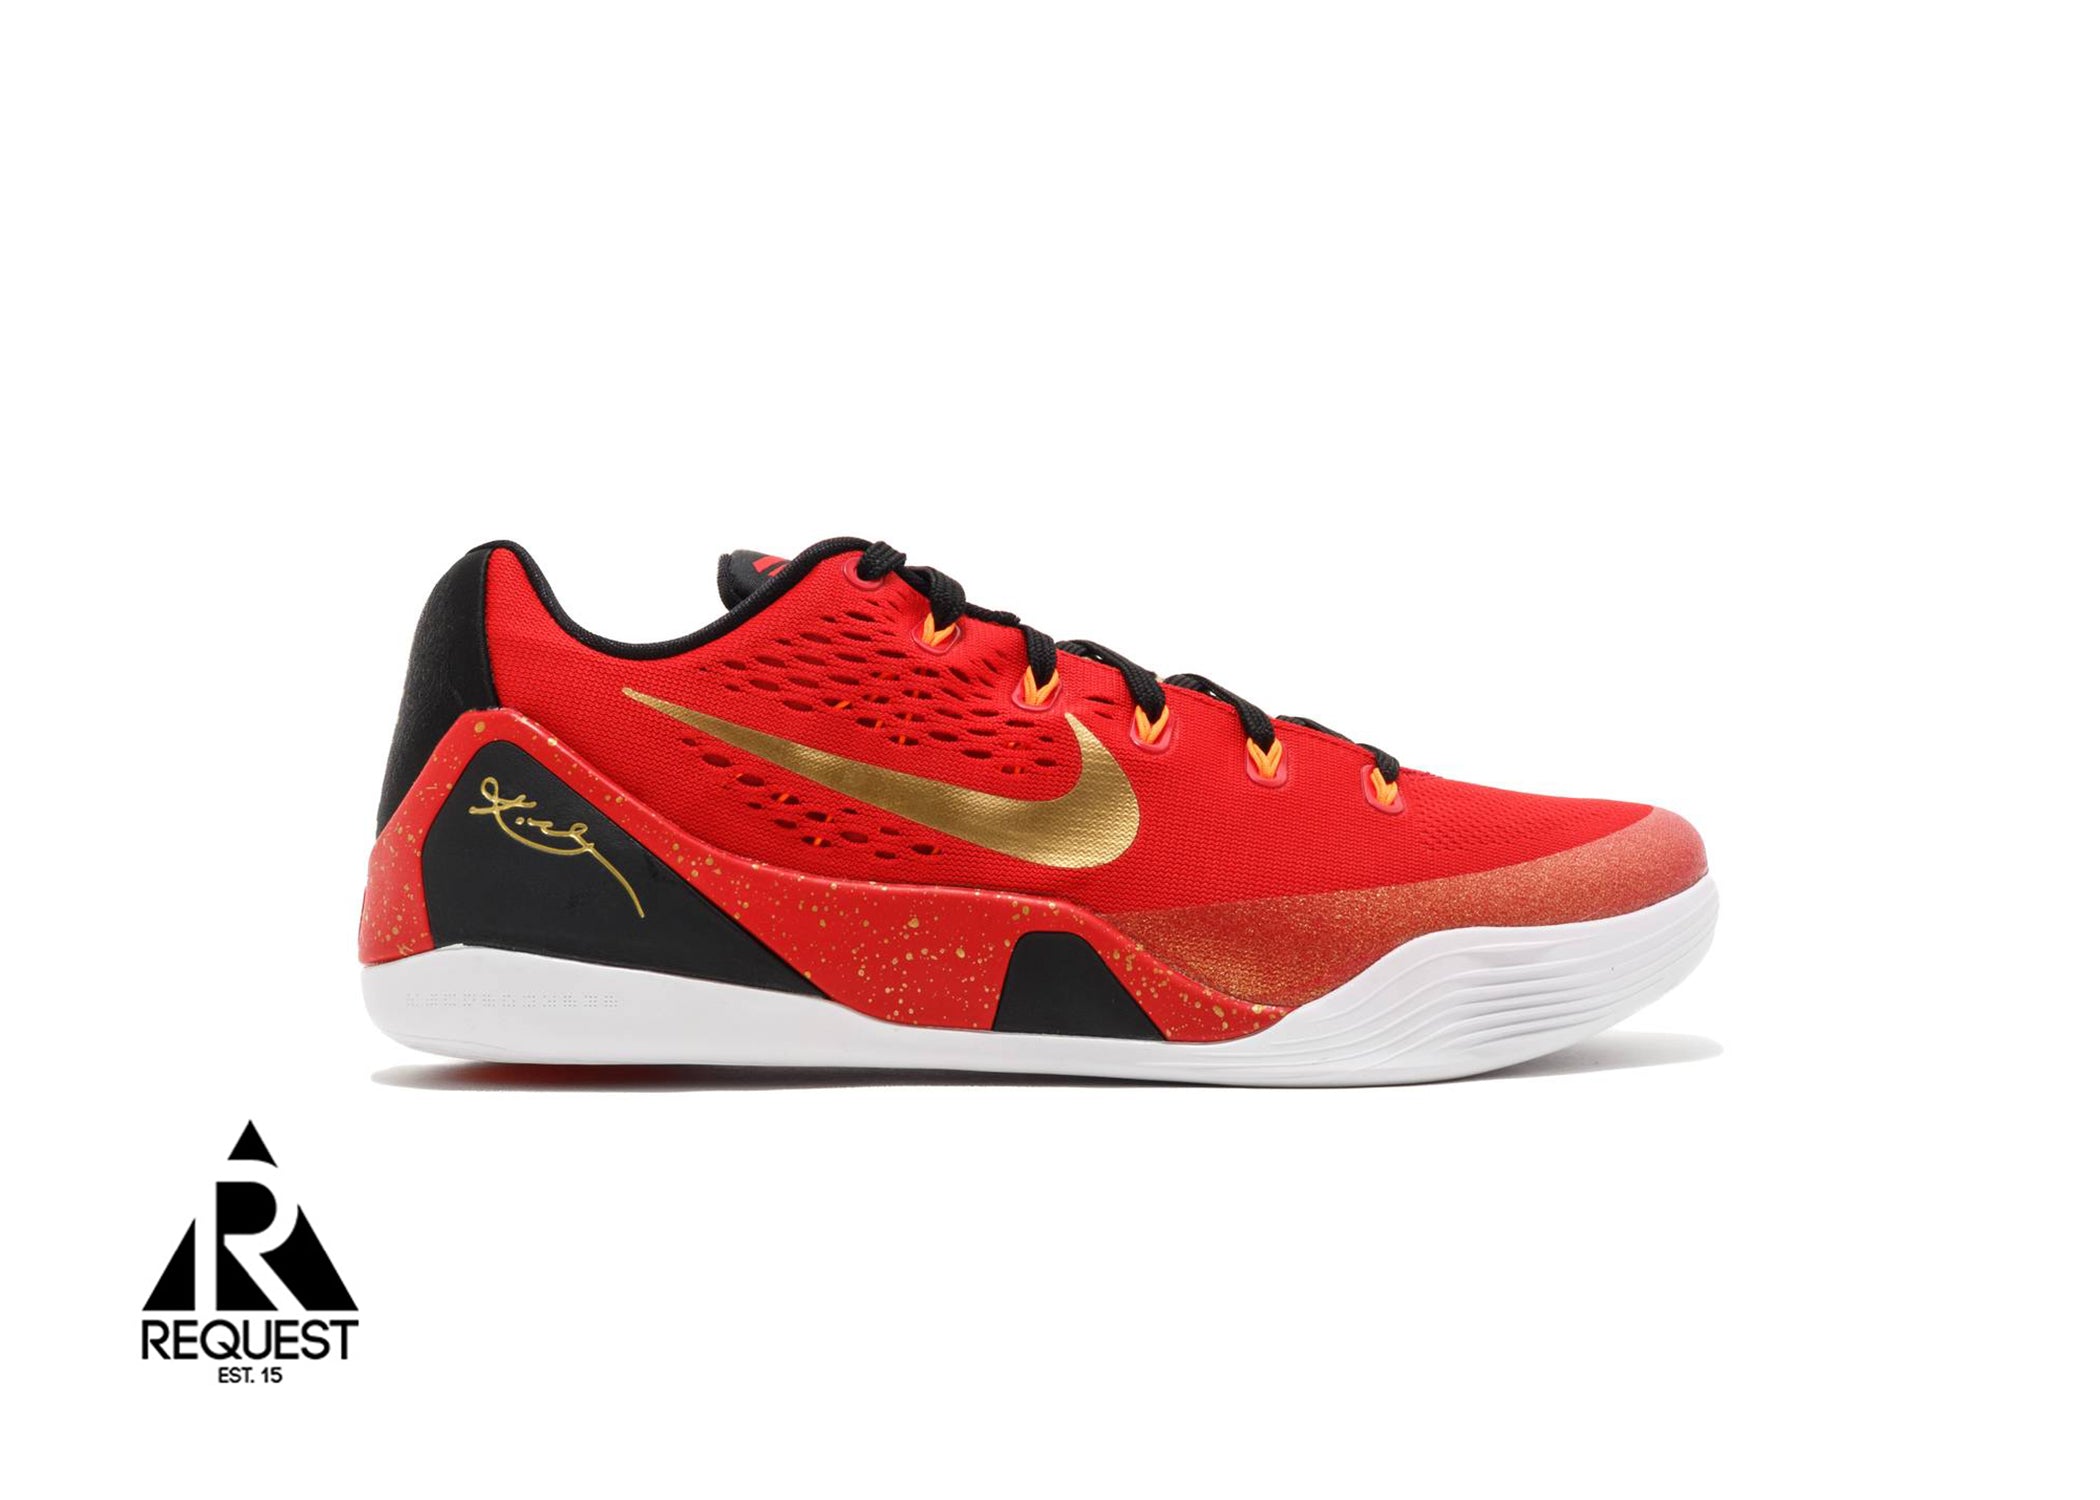 Nike Kobe 9 EM Low "China"